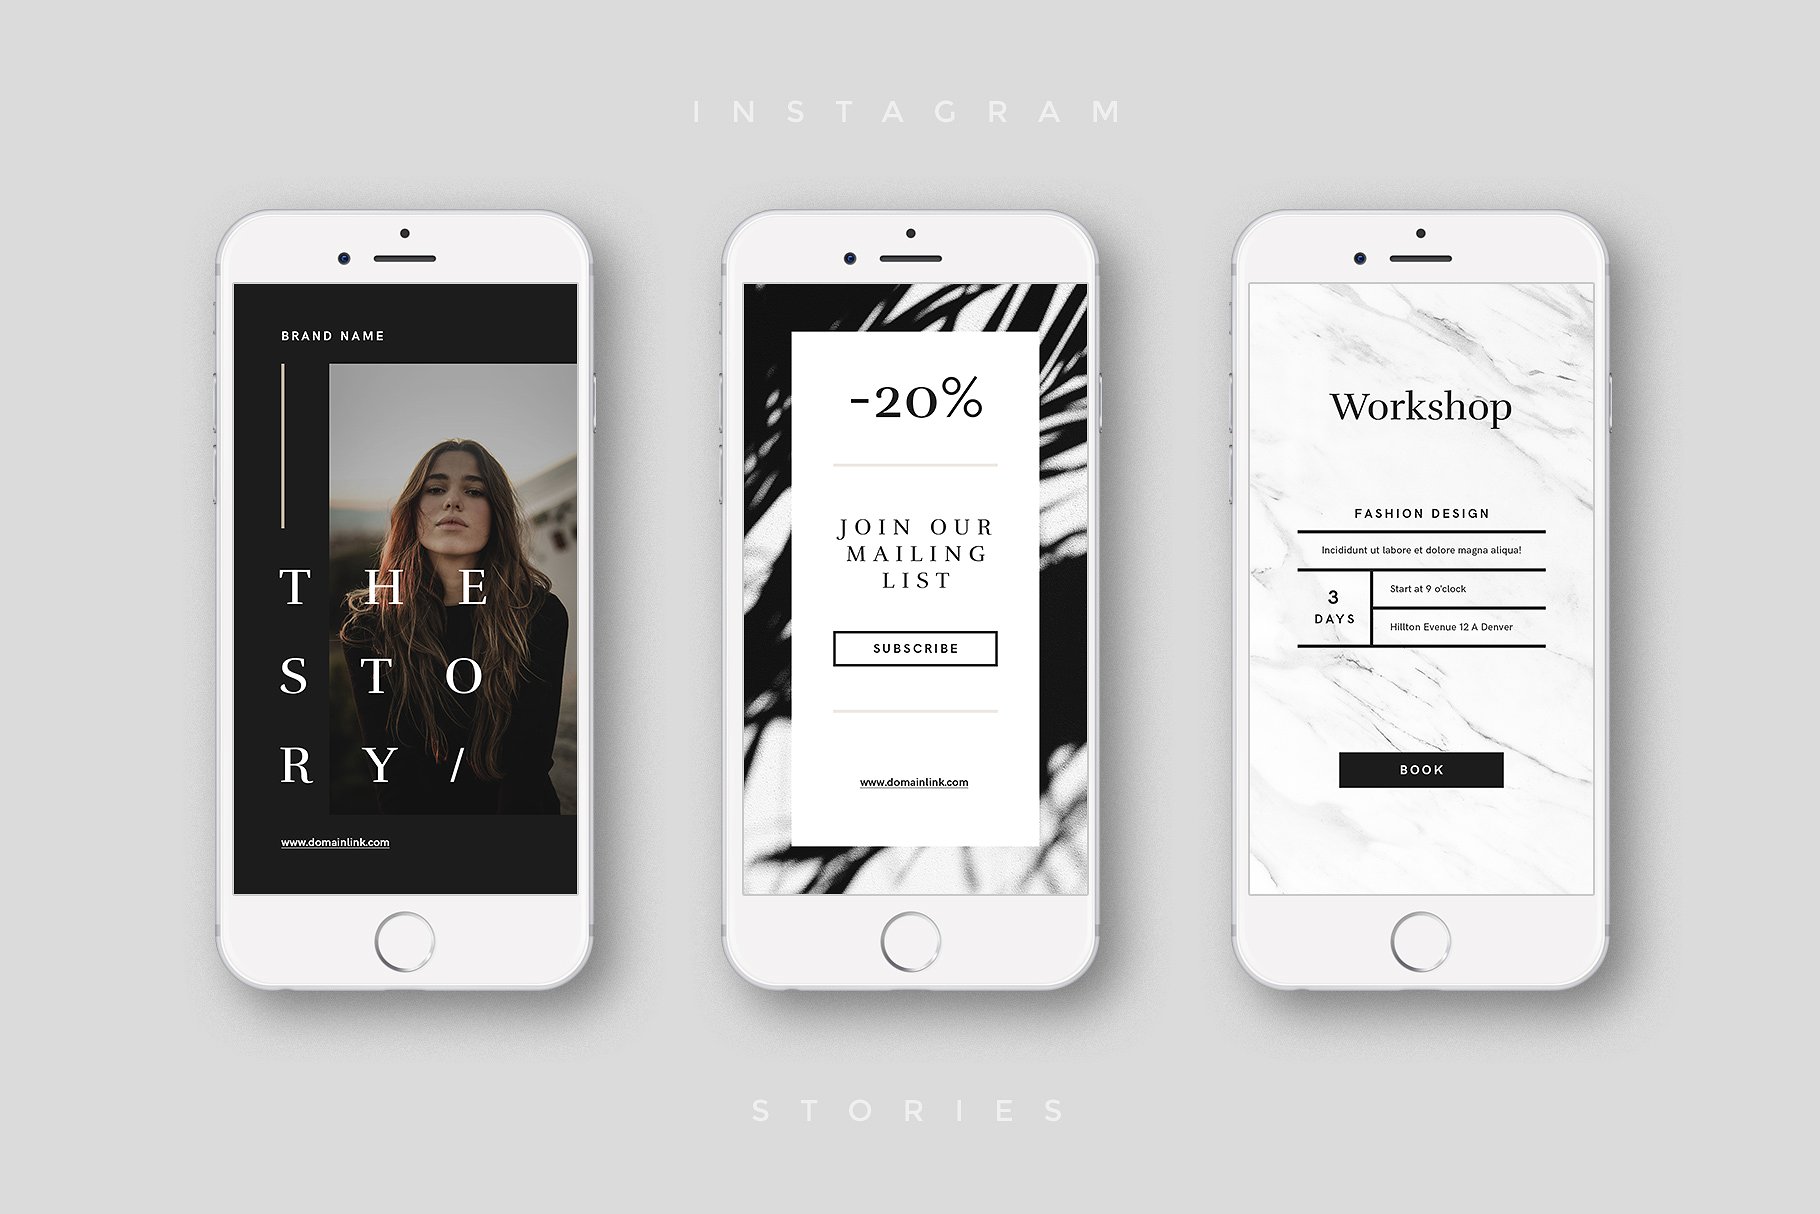 奢侈品电商社交媒体Ins故事贴图模板非凡图库精选 Luxury Instagram Stories Pack插图(4)